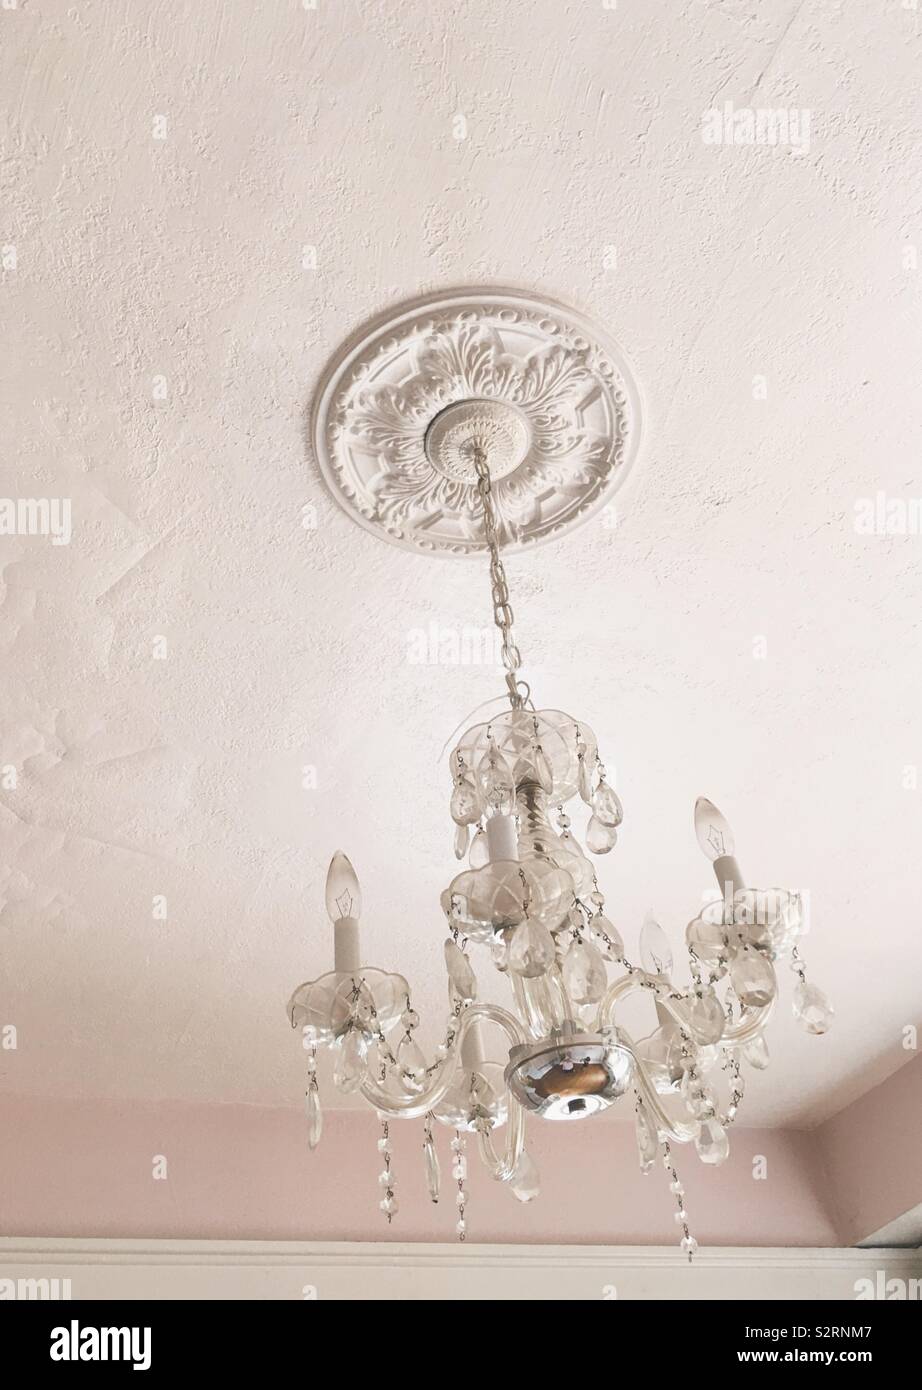 Reich verzierte, Vintage kristall Kronleuchter hängen von einem hellen rosa bemalten Decke. Interieur Home Decor Foto. Stockfoto